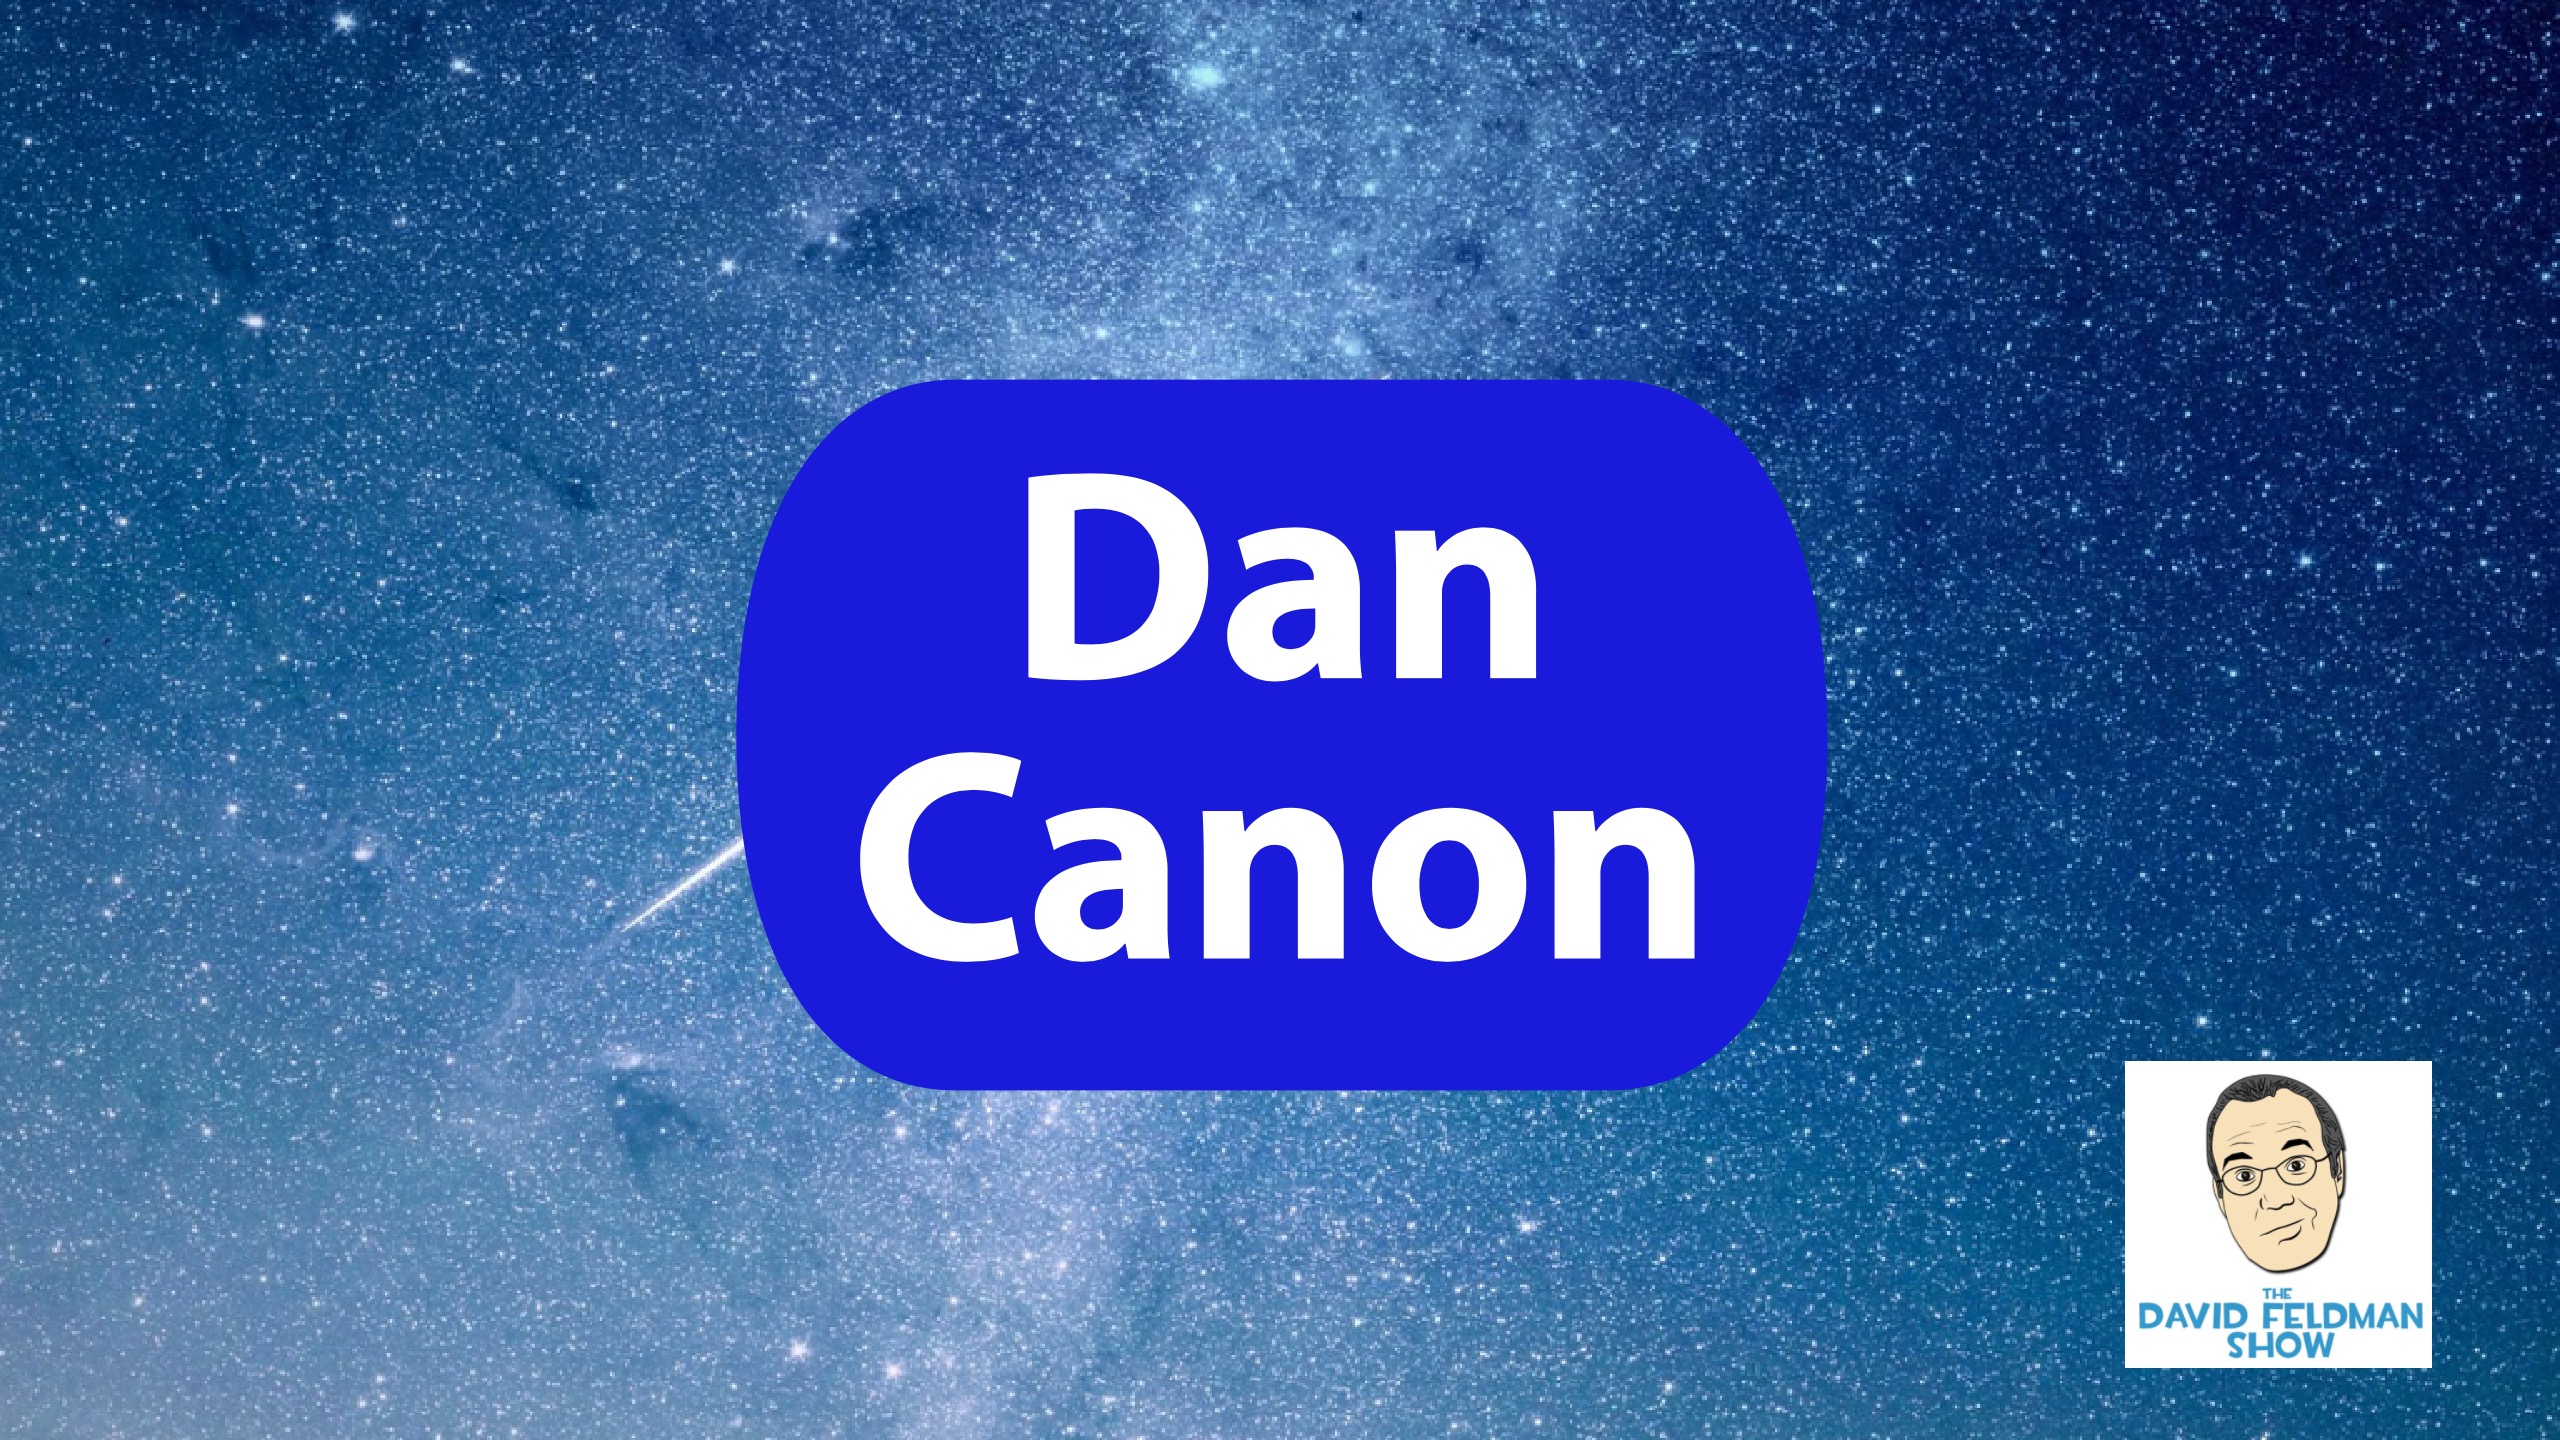 Dan Canon for Congress